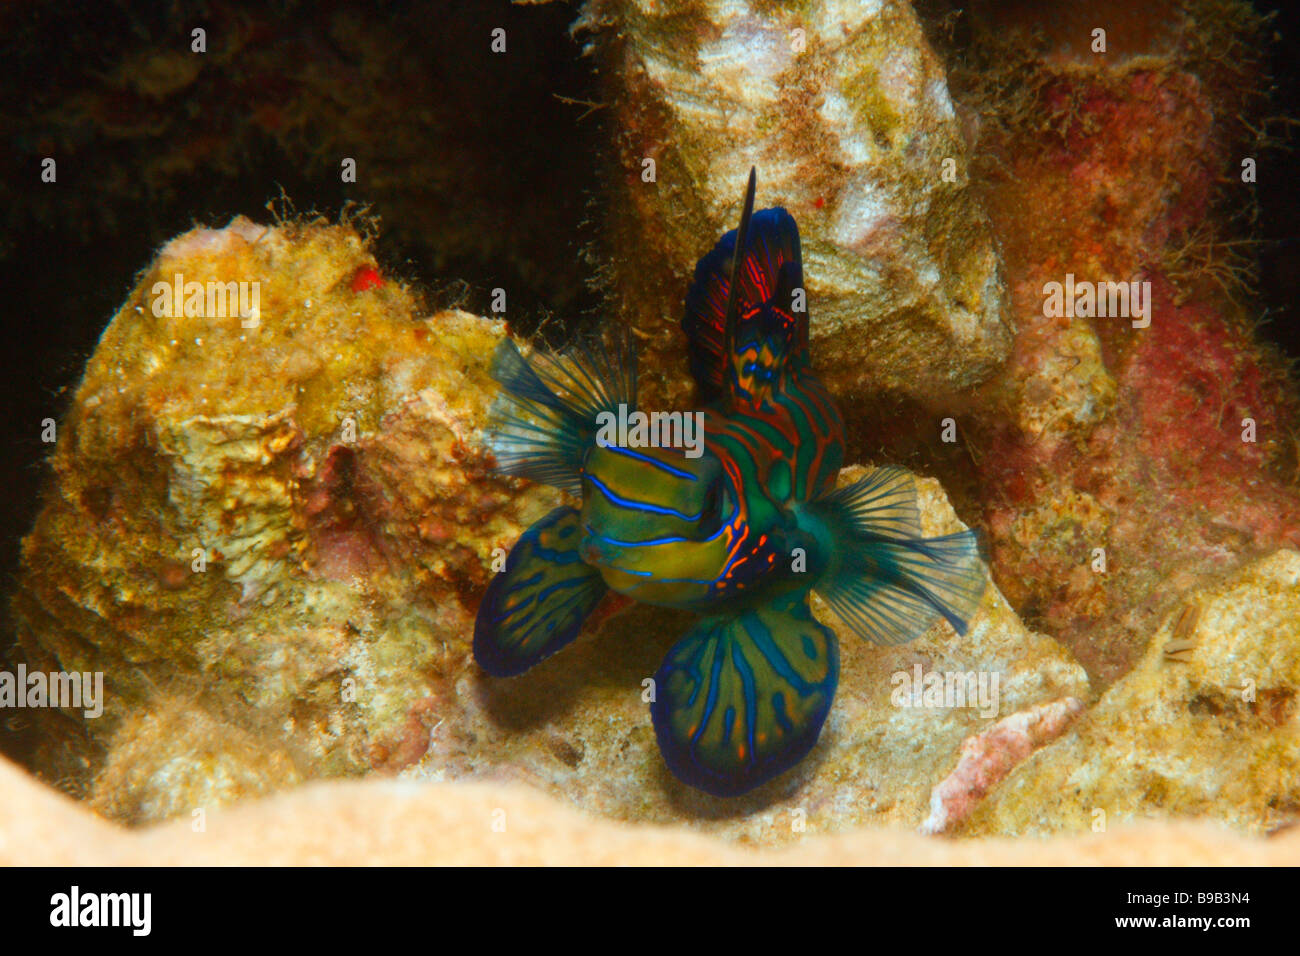 Un maschio di pesce mandarino (Synchiropus splendidus) svasata la sua pinna dorsale e pinne pettorali durante la controversia territoriale con un altro maschio. Foto Stock